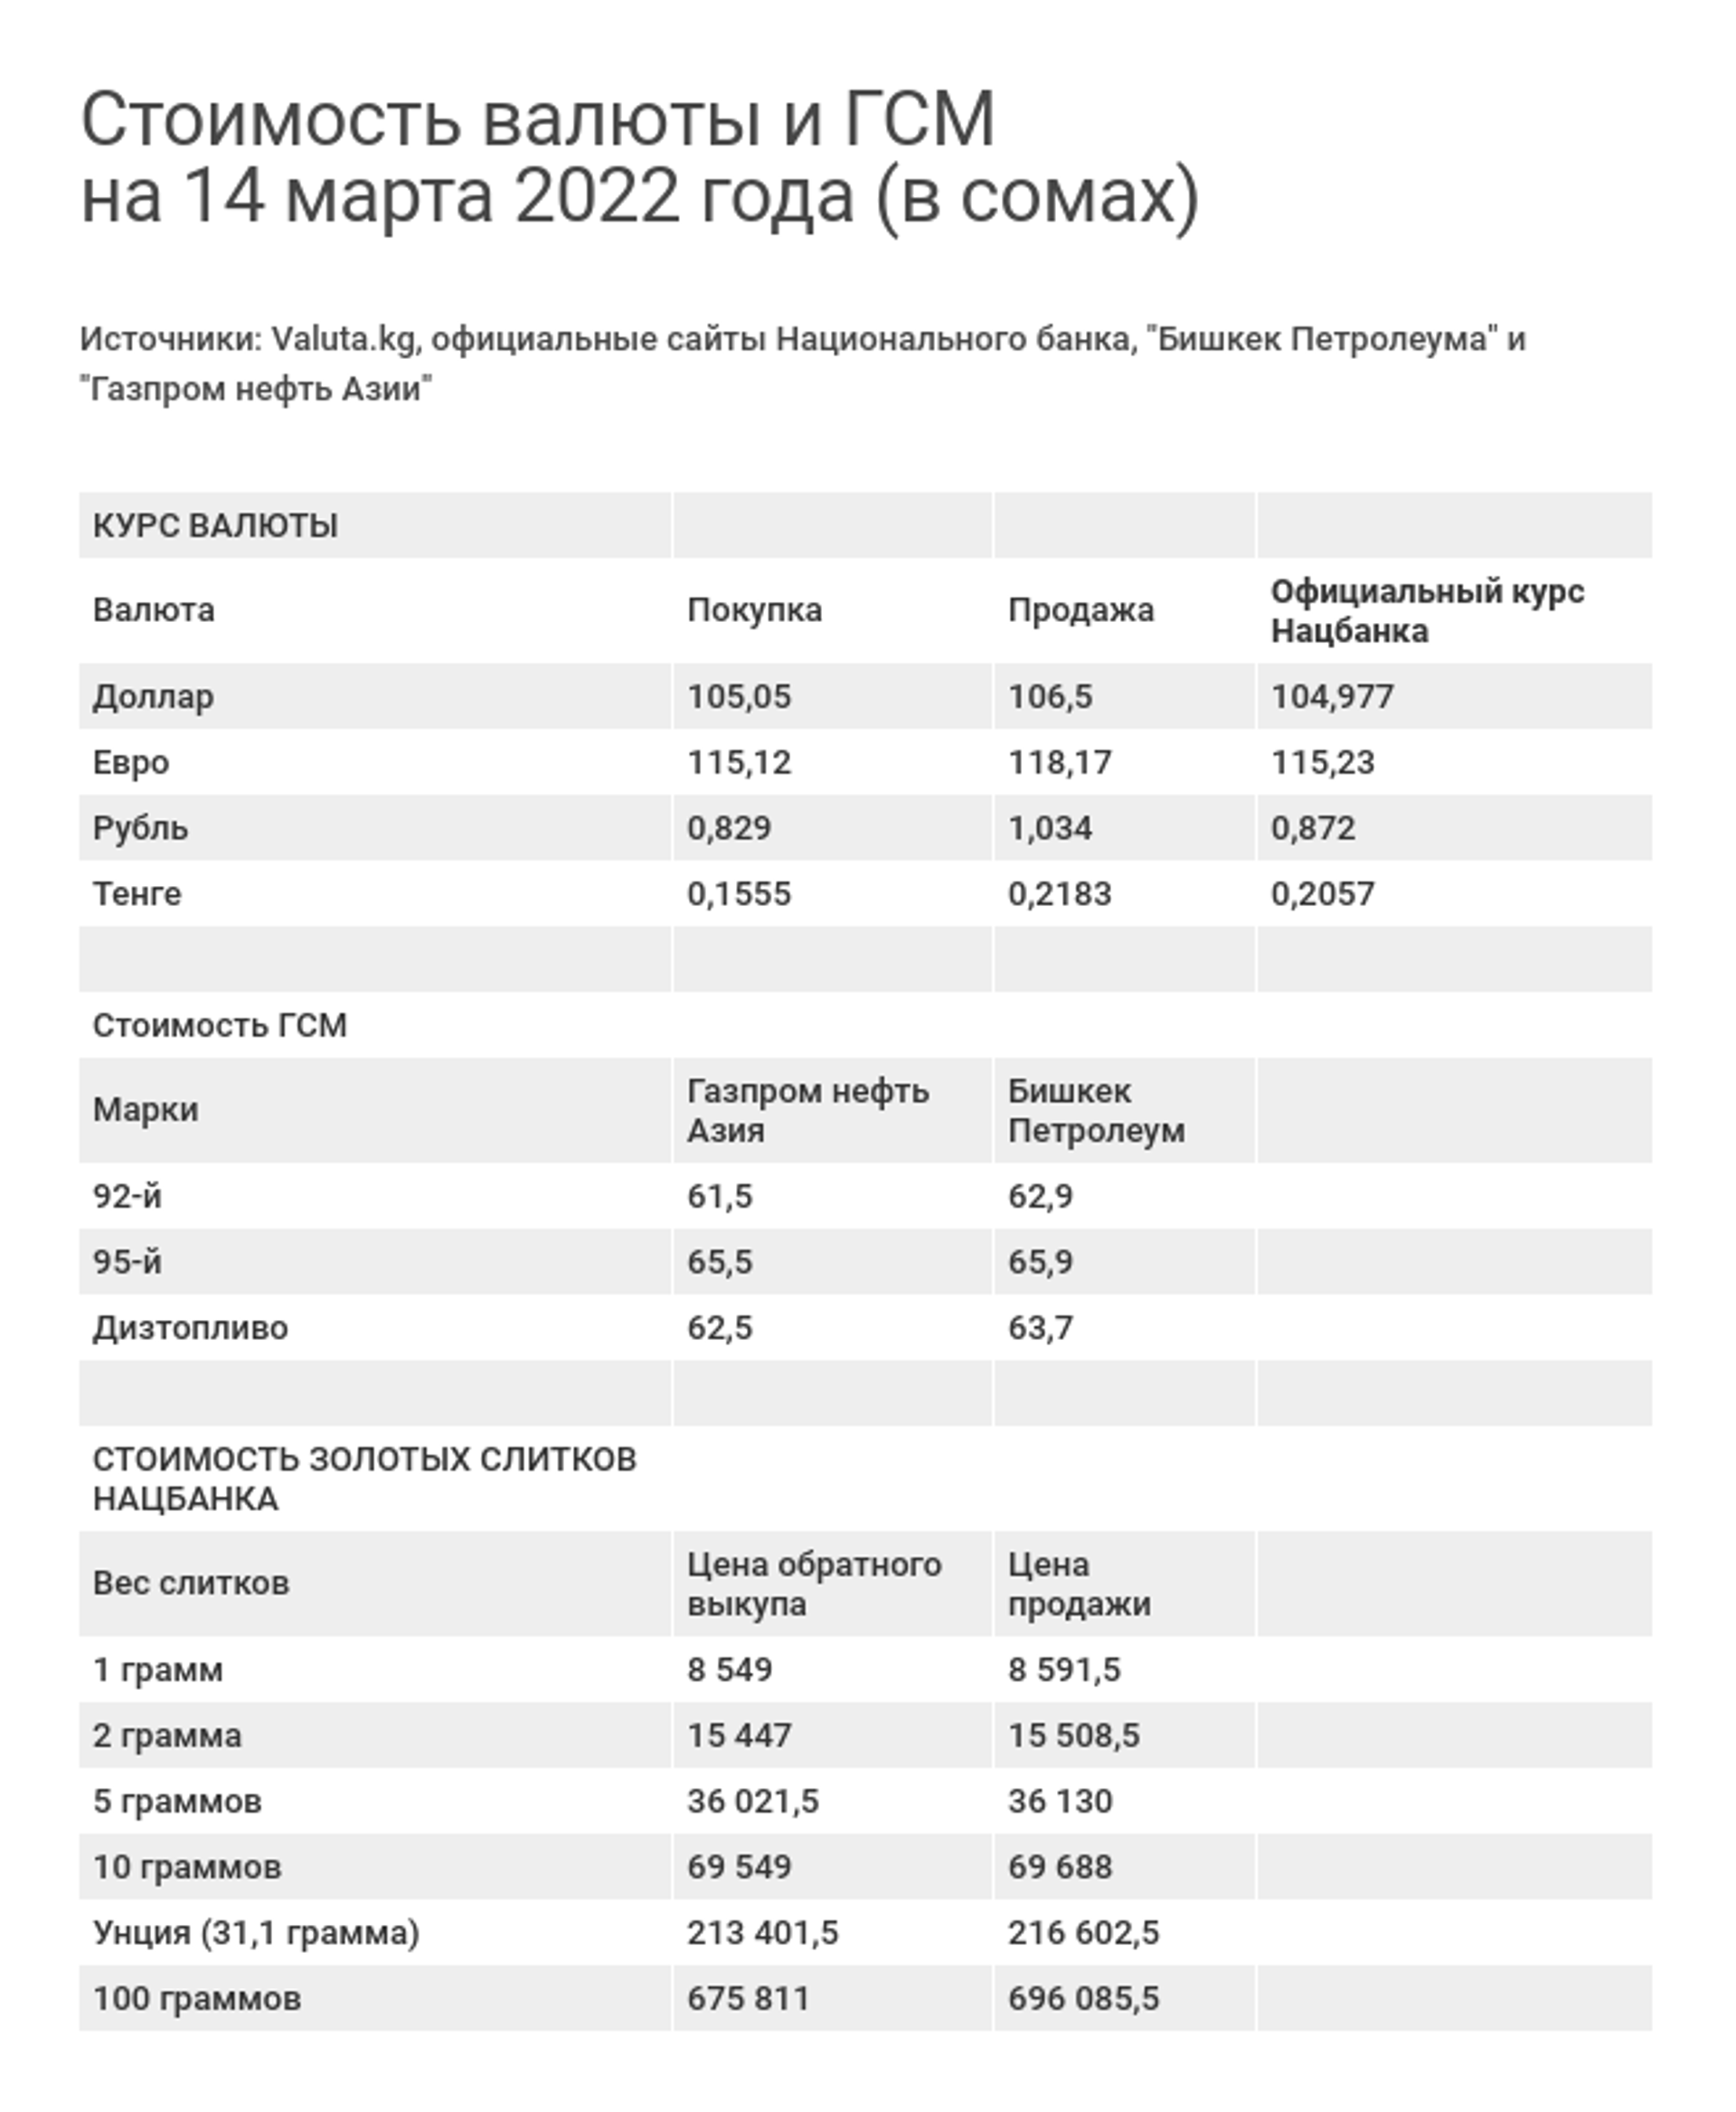 Стоимость валюты и ГСМ на 14 марта 2022 года (в сомах) - Sputnik Кыргызстан, 1920, 14.03.2022